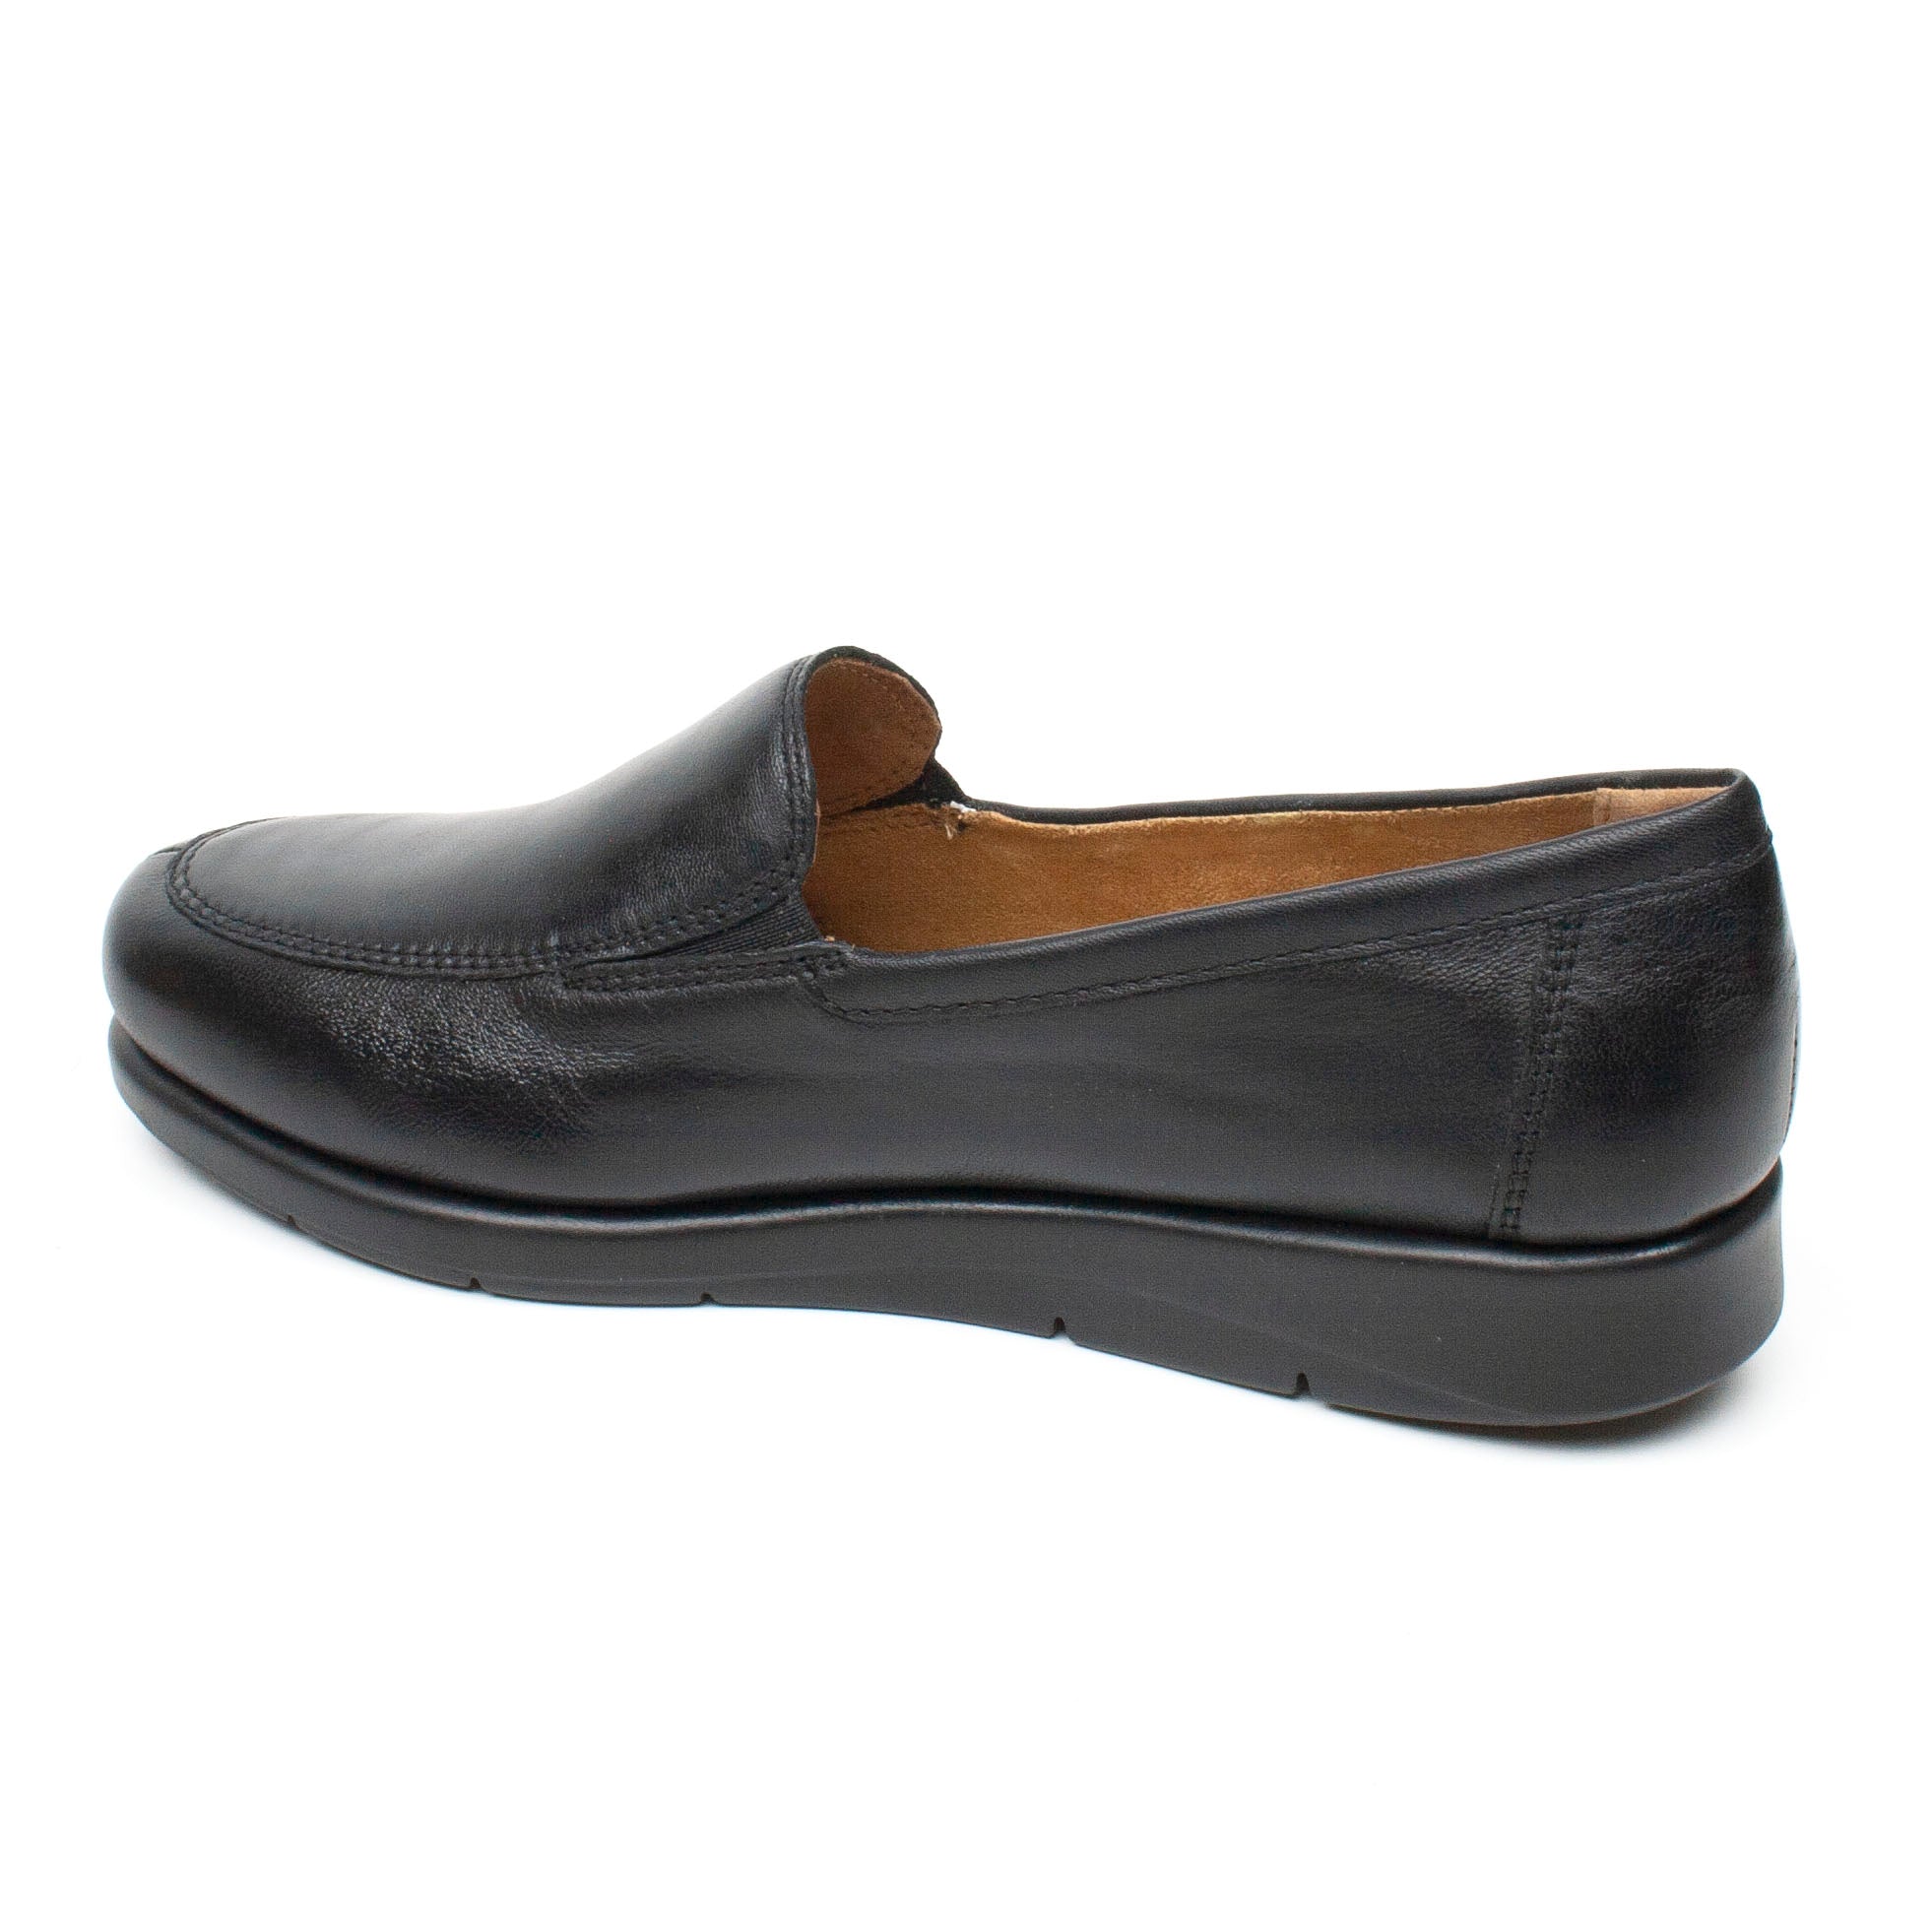 Caprice pantofi dama negru ID2172-NG